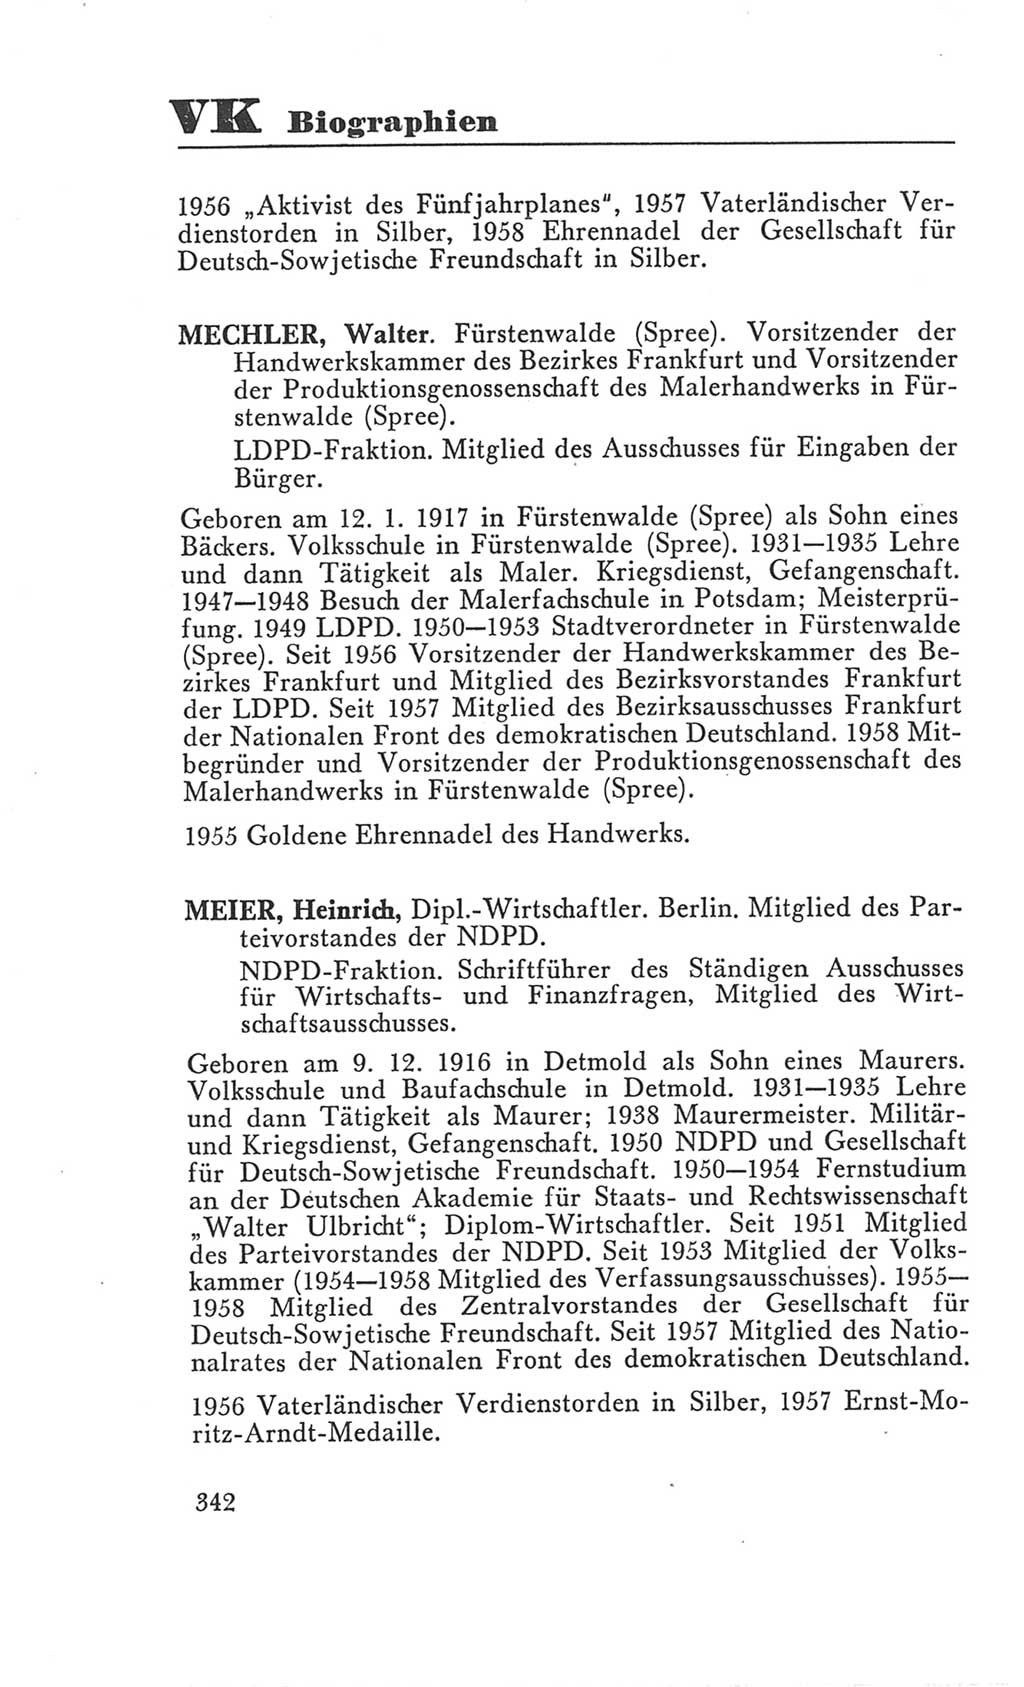 Handbuch der Volkskammer (VK) der Deutschen Demokratischen Republik (DDR), 3. Wahlperiode 1958-1963, Seite 342 (Hdb. VK. DDR 3. WP. 1958-1963, S. 342)